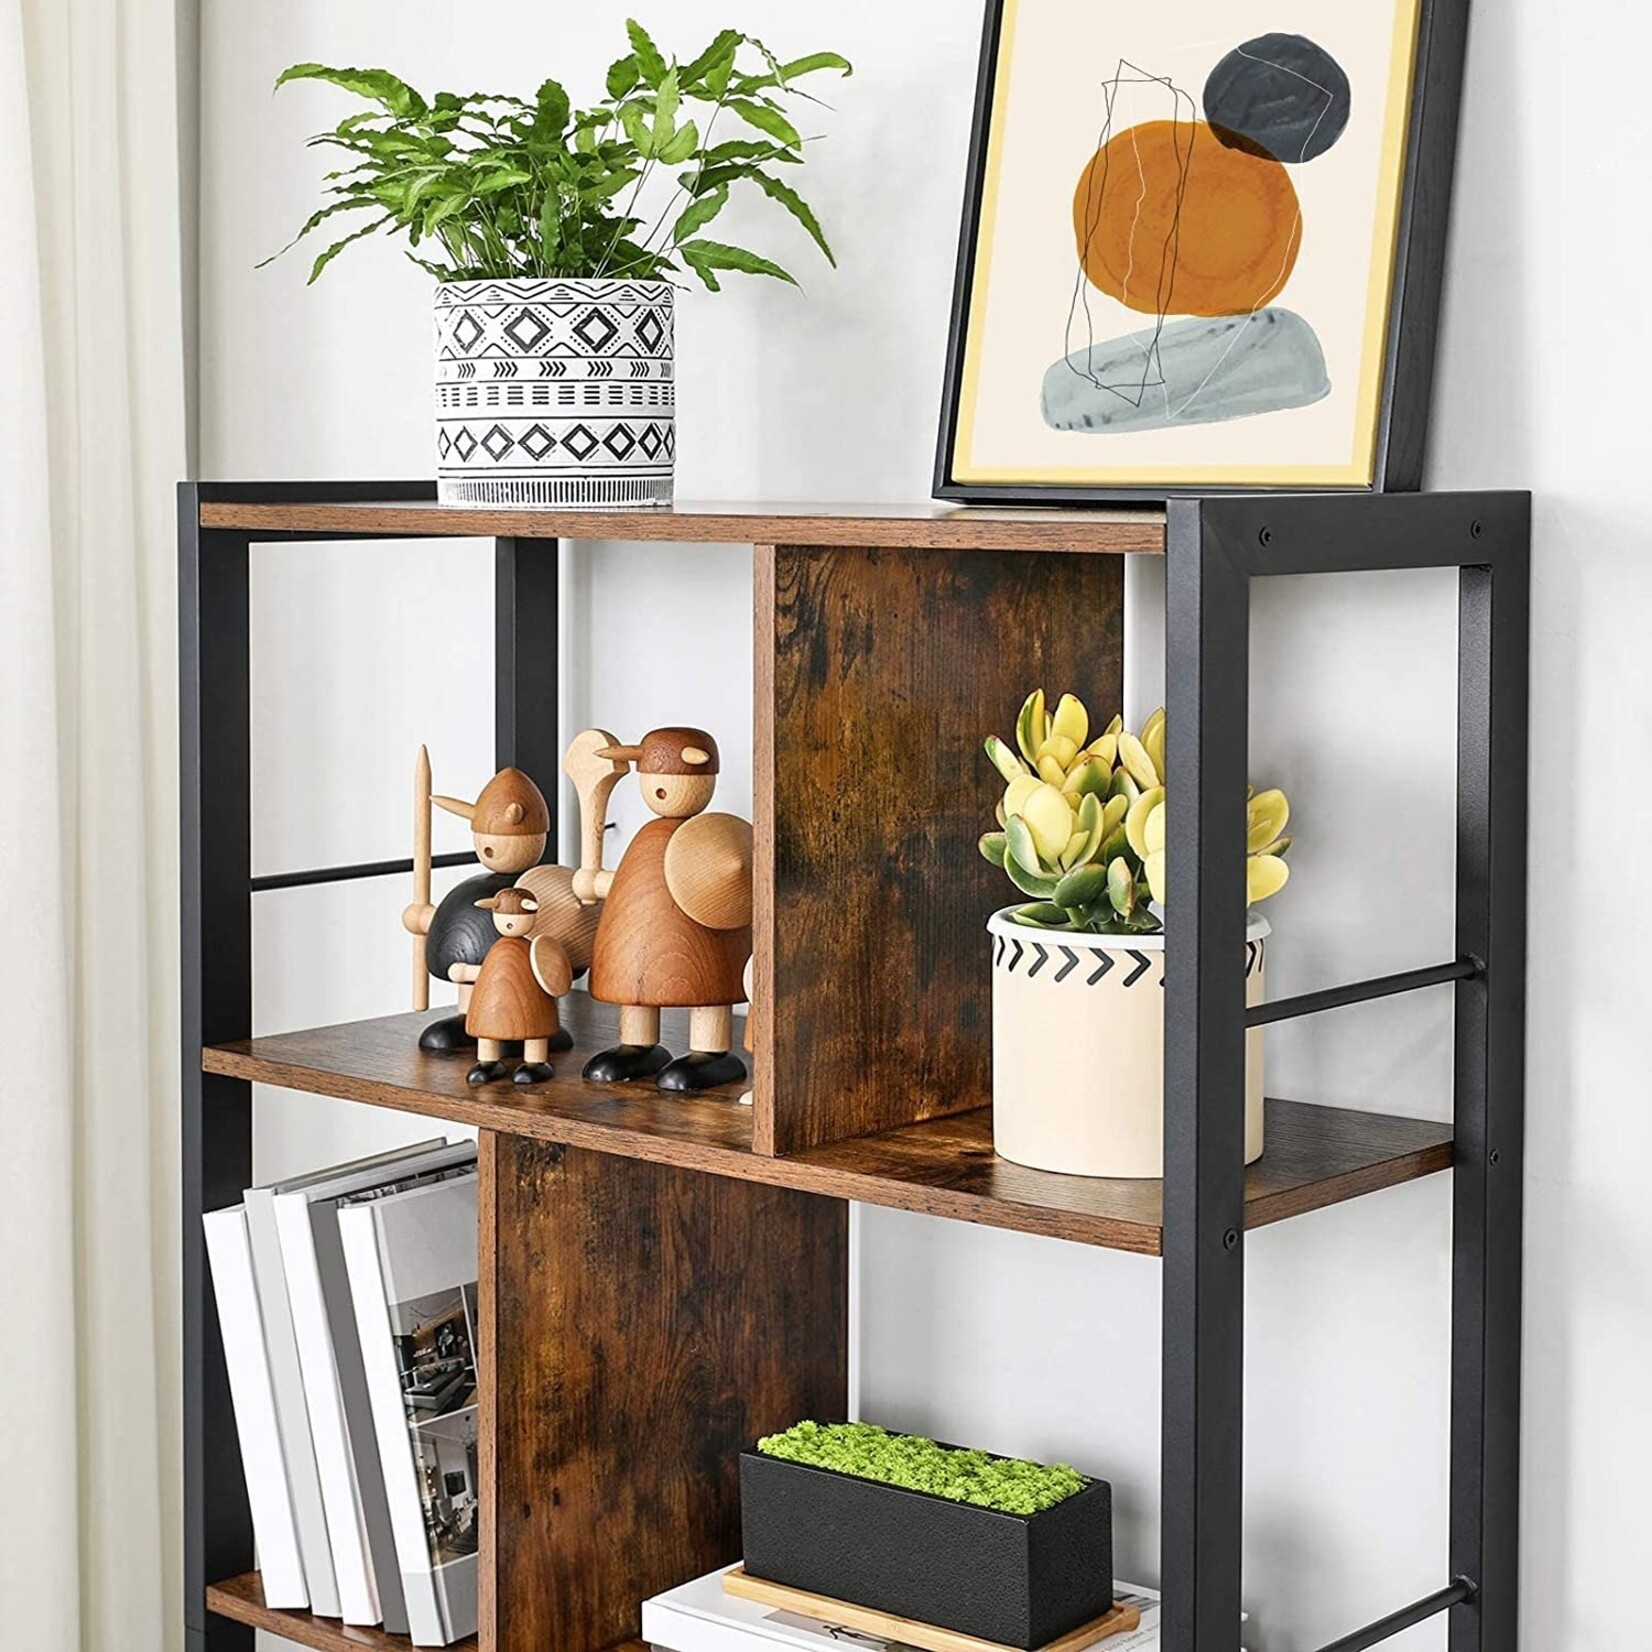 Bobbel Home Bobbel Home - Bookcase - 5 Shelves - Wood - Brown